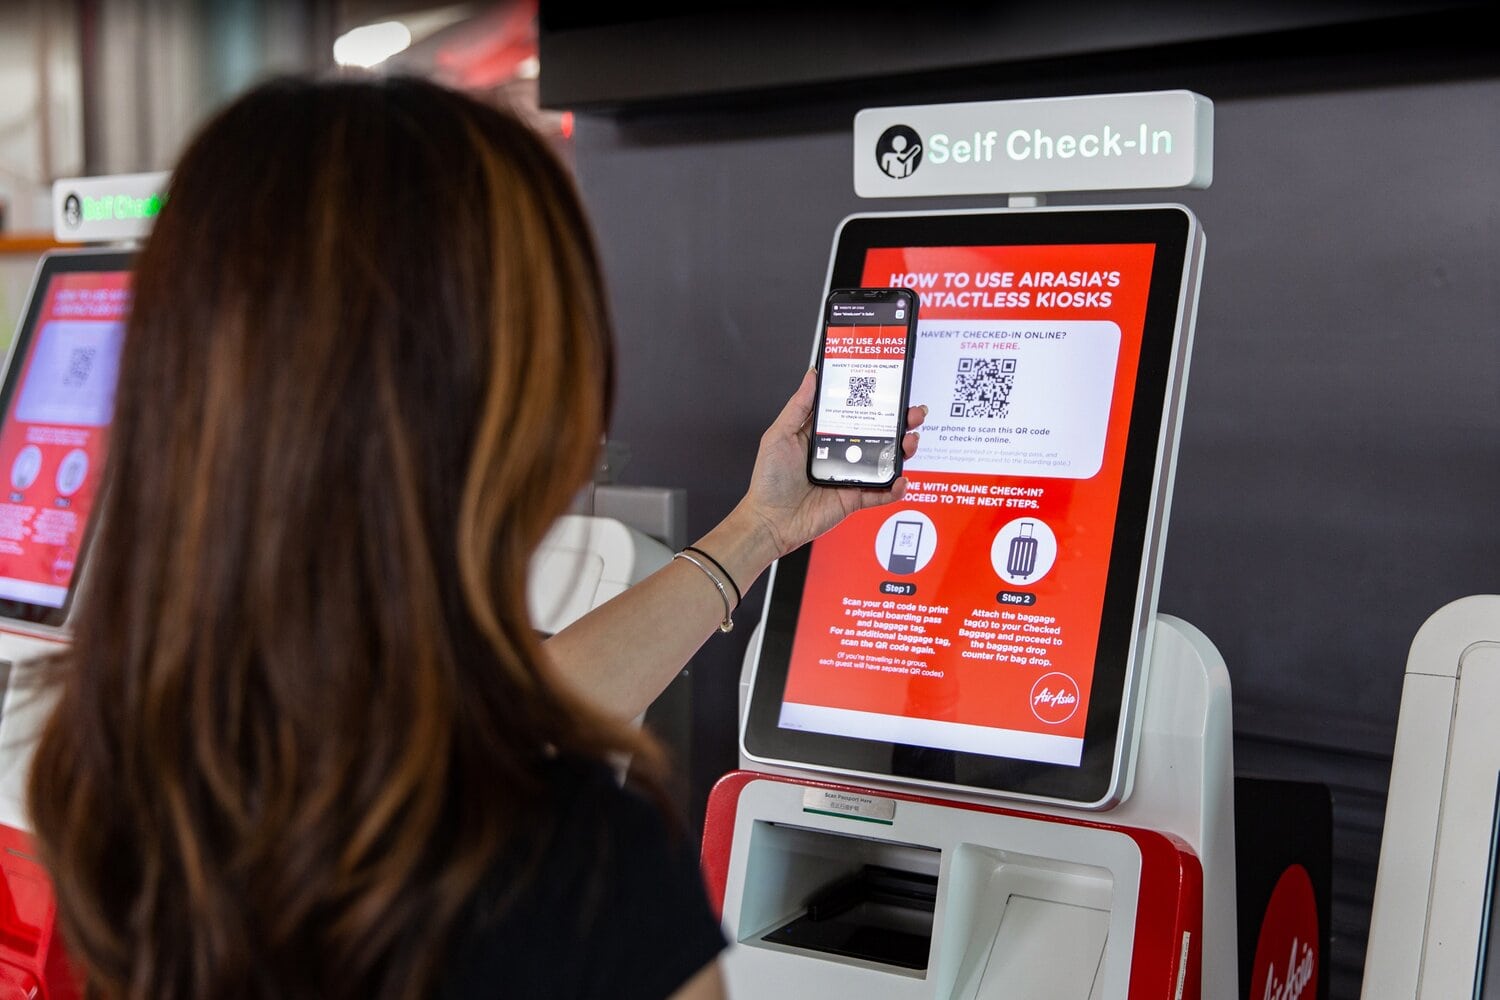 AirAsia's Contactless Kiosk